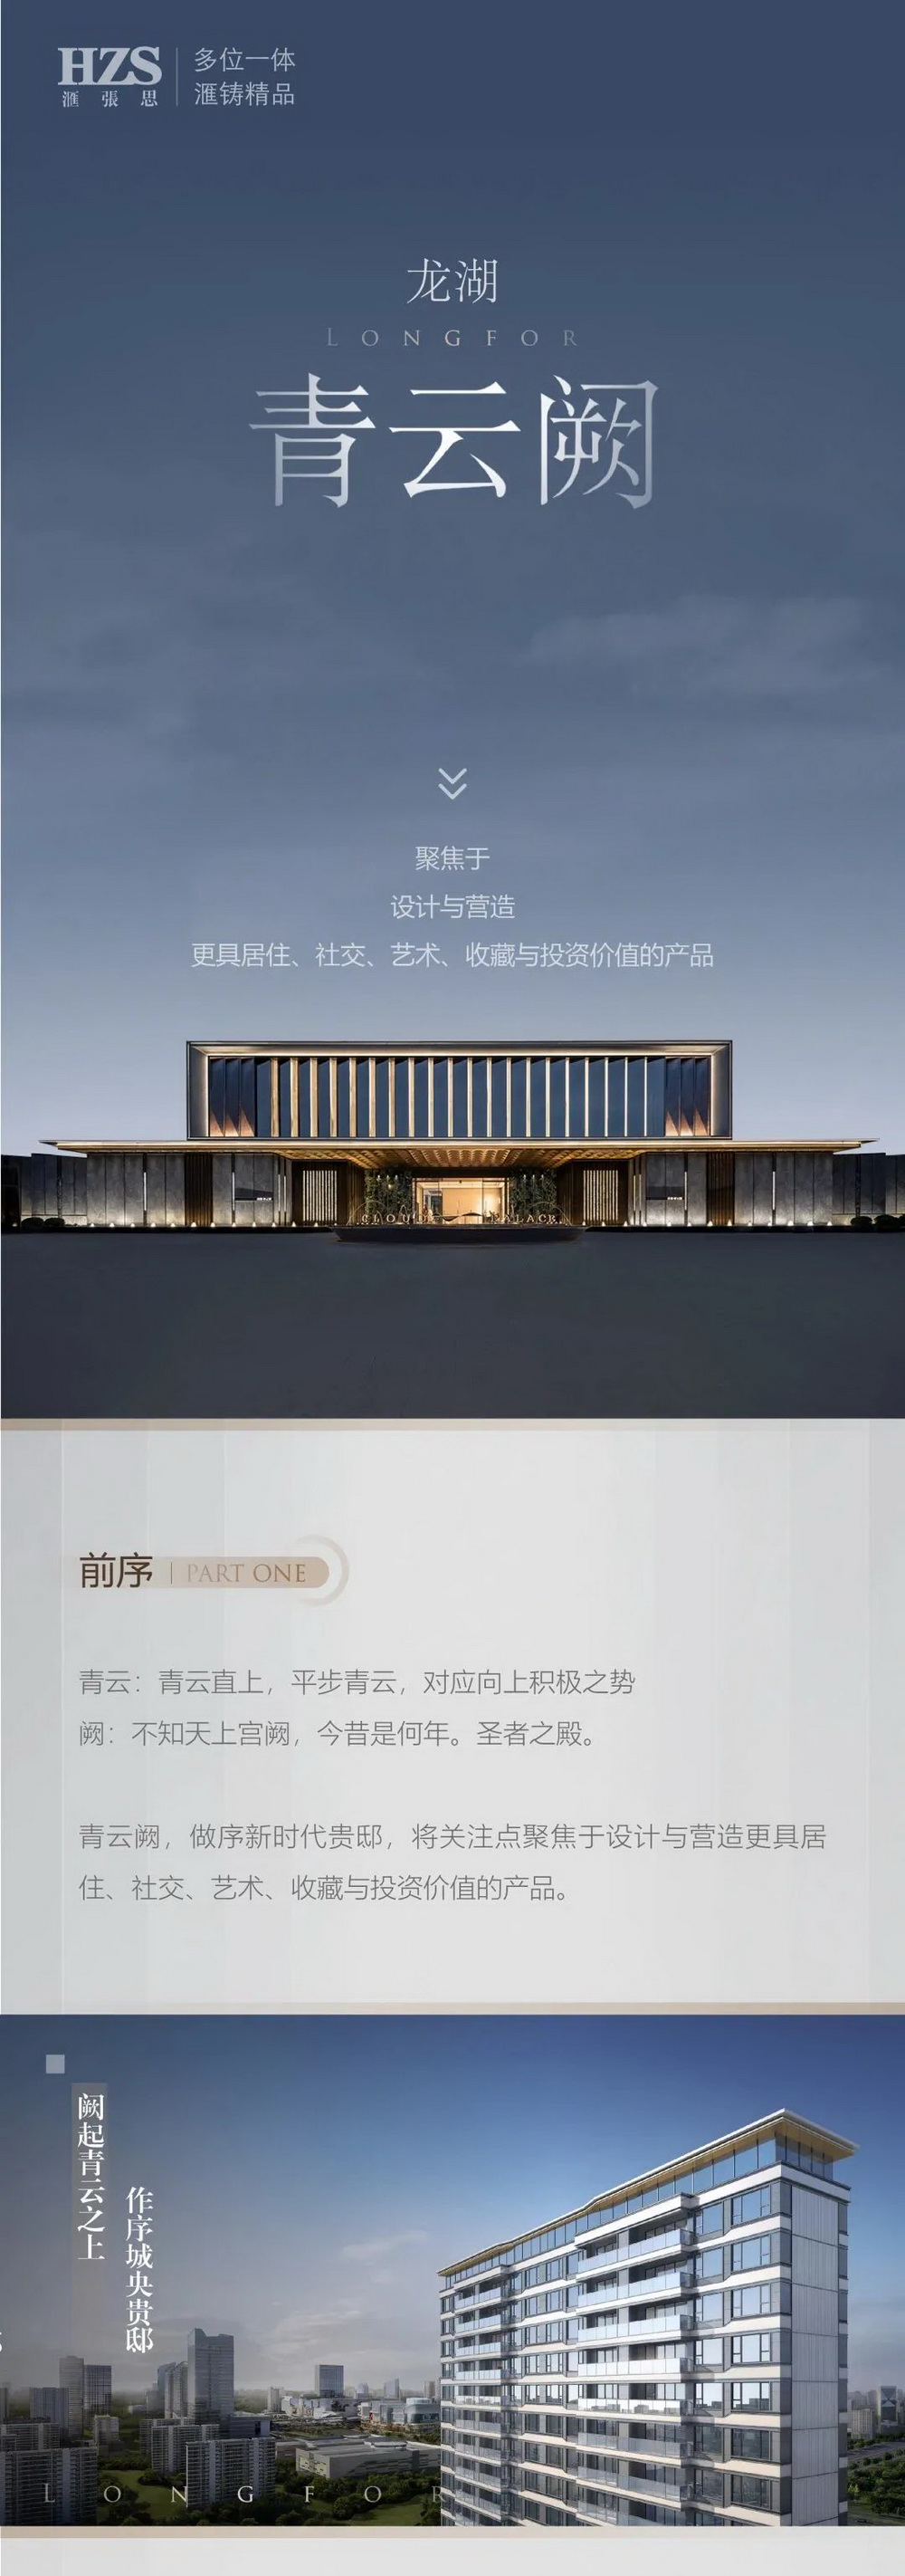 龙湖·苏州青云阙 建筑设计 / HZS汇张思